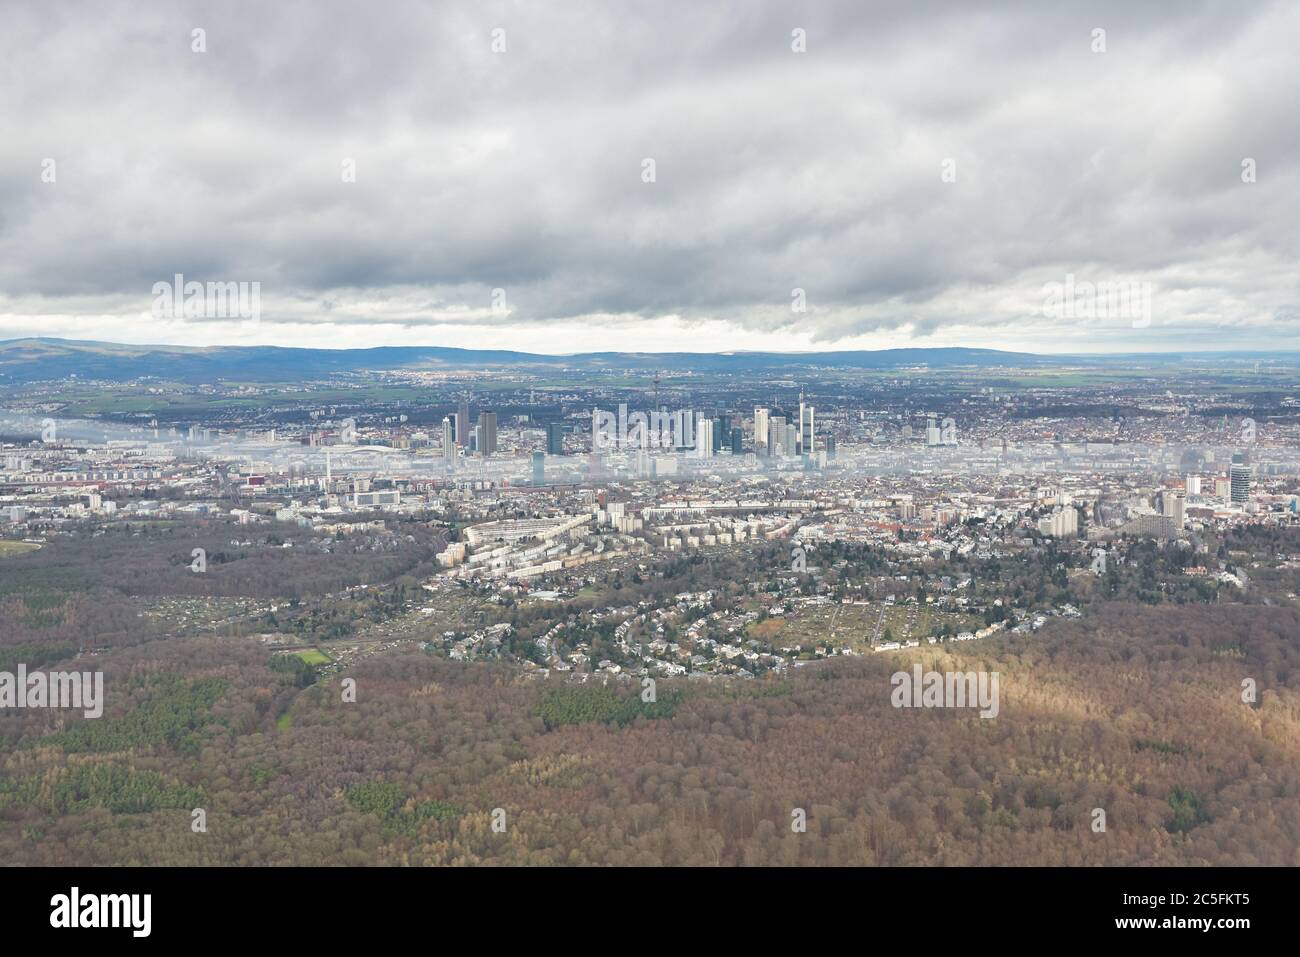 FRANCOFORTE AM MAIN, GERMANIA - CIRCA GENNAIO 2020: Vista aerea della città di Francoforte sul meno vista da aerei moderni. Foto Stock